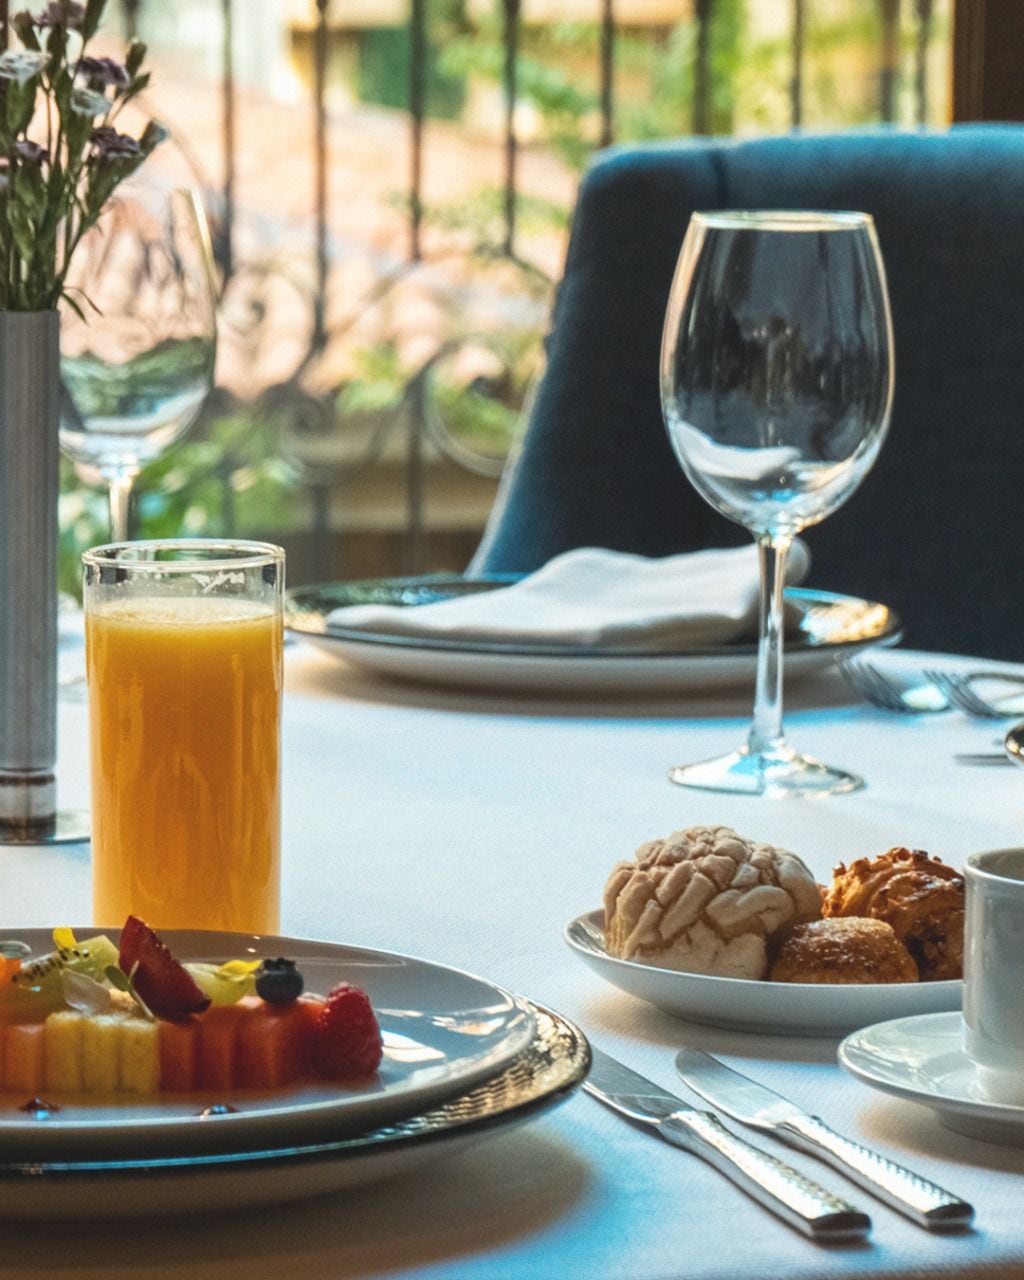 El Hotel Quinta Real ofrece desayunos, desayunos y cenas. (Foto: Facebook / @Quinta Real)